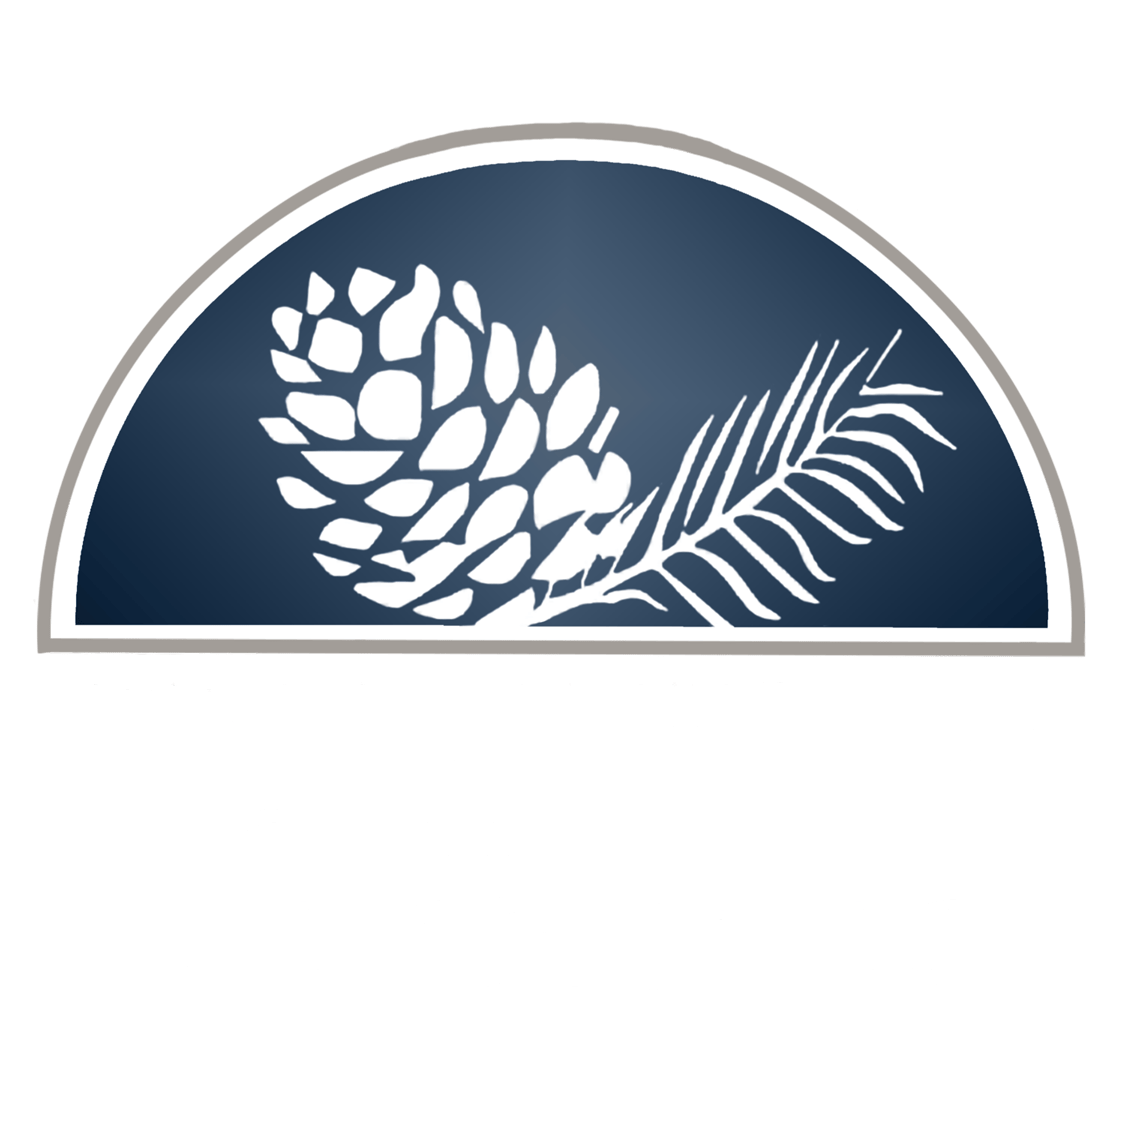 Premier Homes of the Carolinas